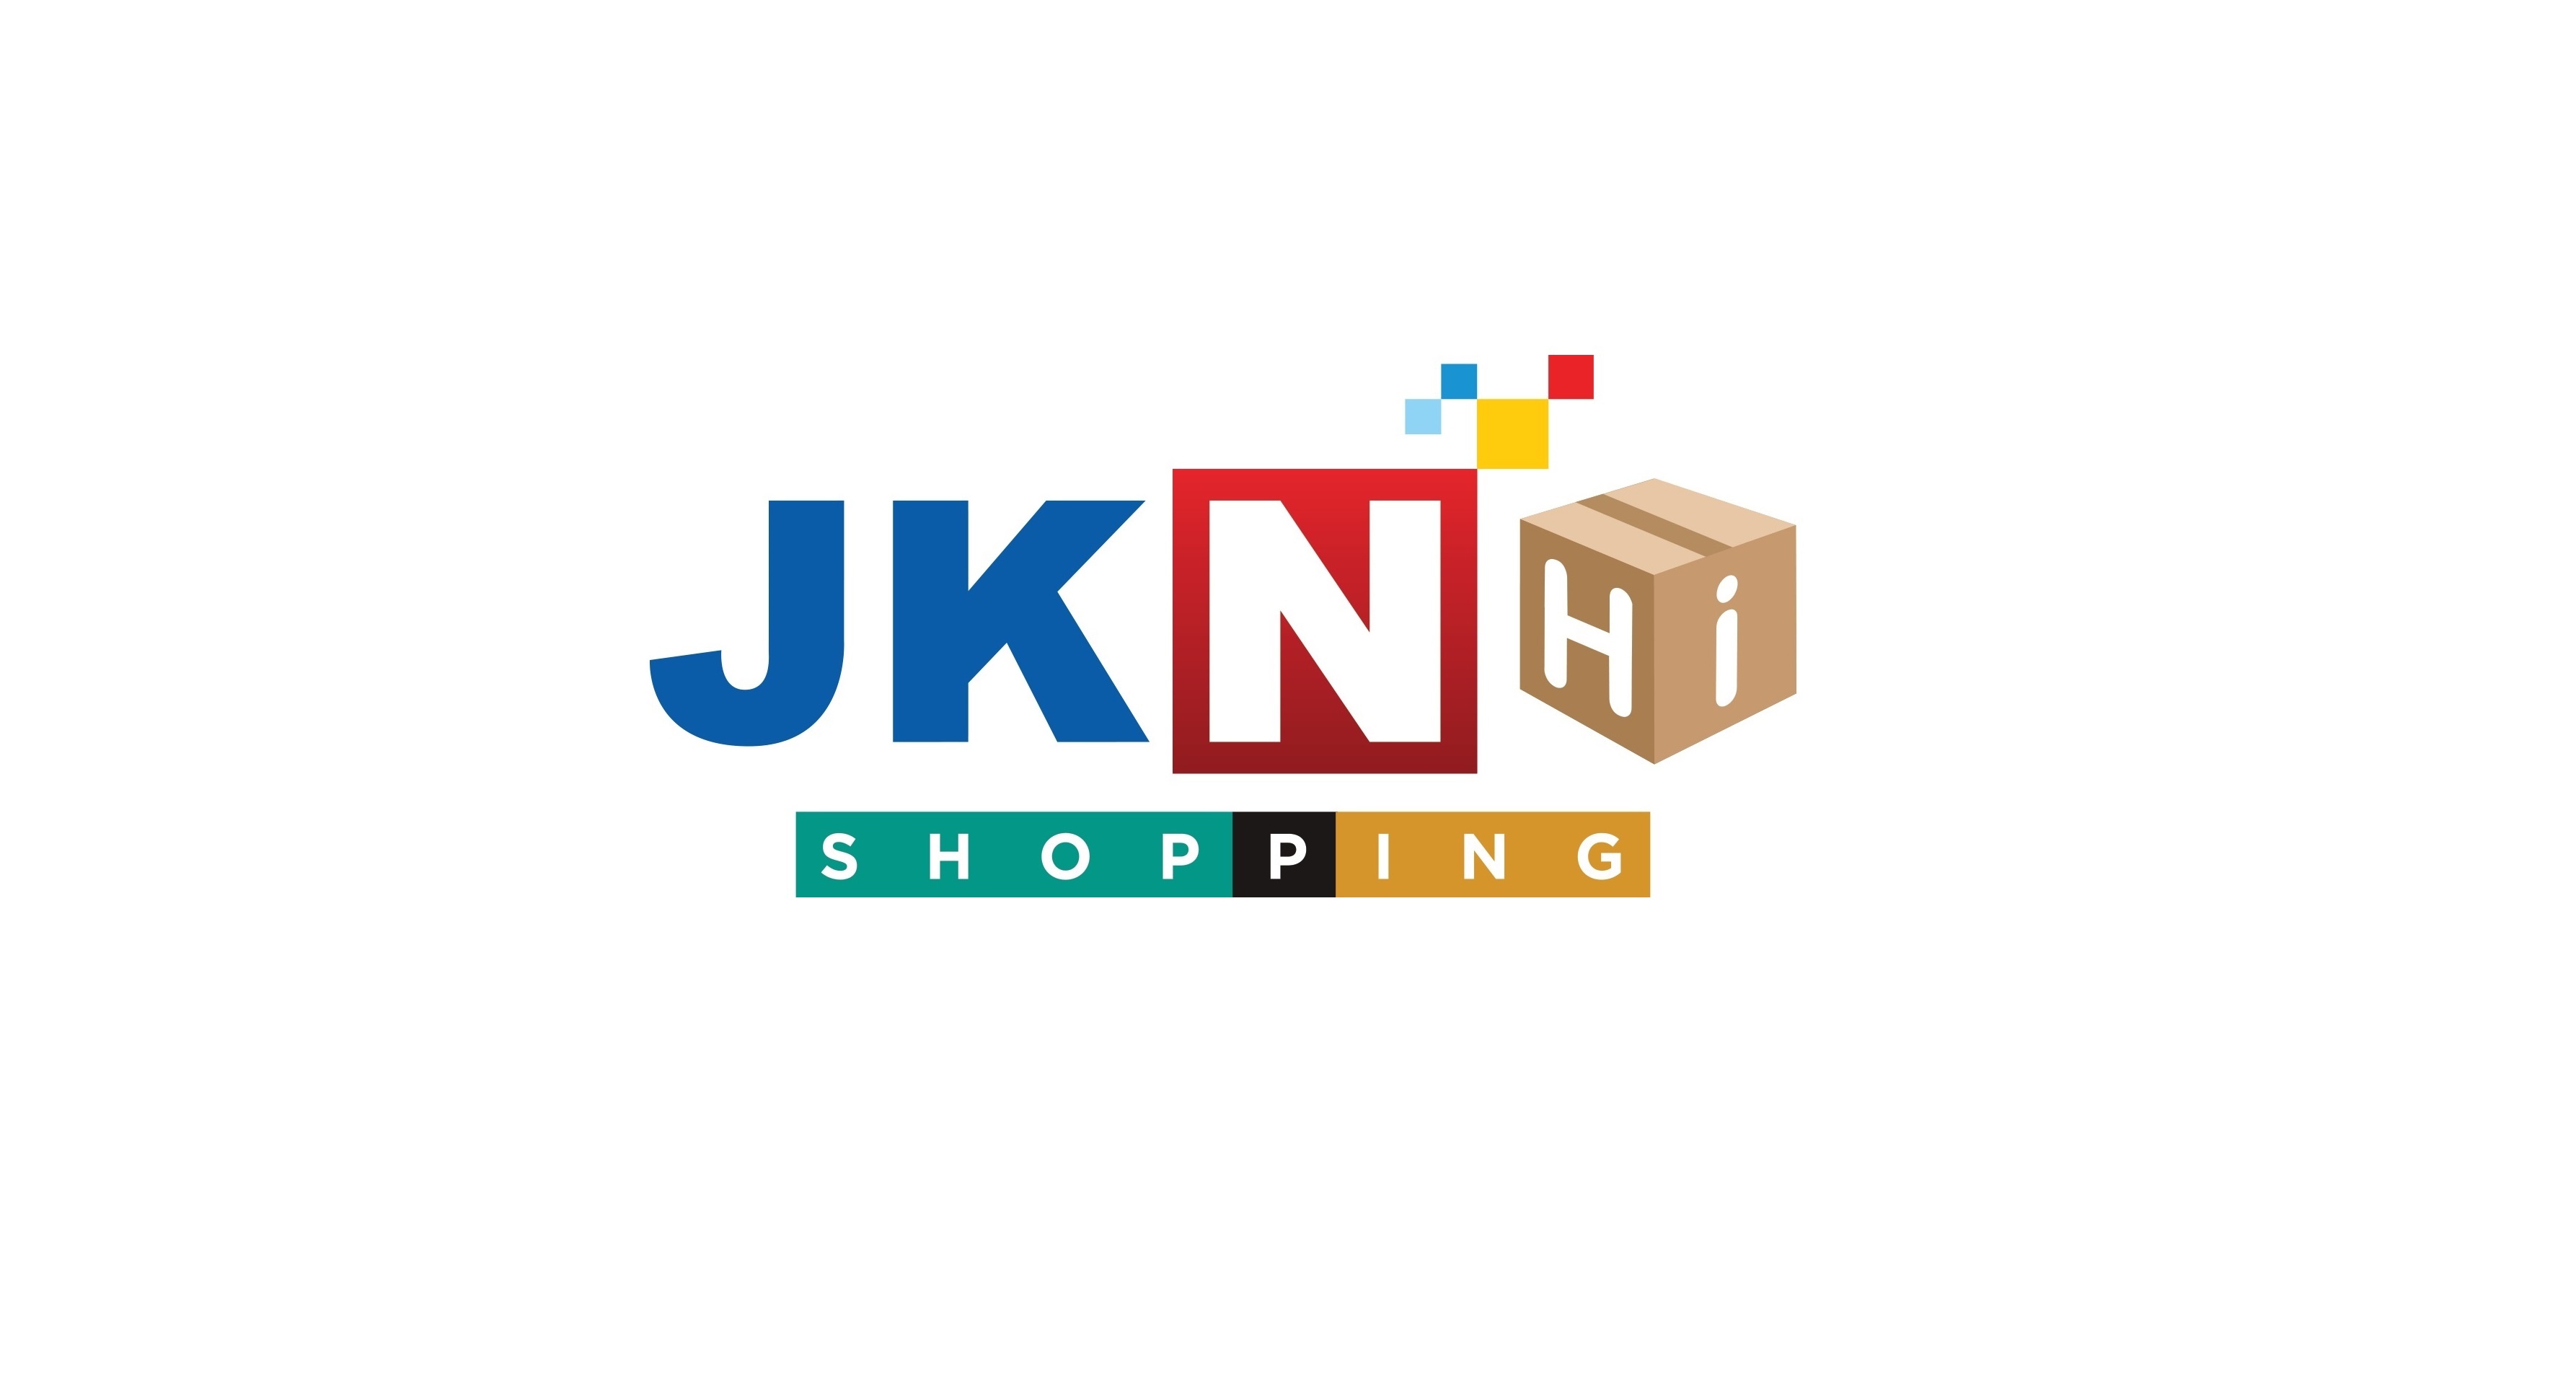 แถลงการณ์บริษัท เจเคเอ็น ไฮ ช็อปปิ้ง จำกัด (JKN Hi Shopping) กรณีค้างชำระค่าสินค้า